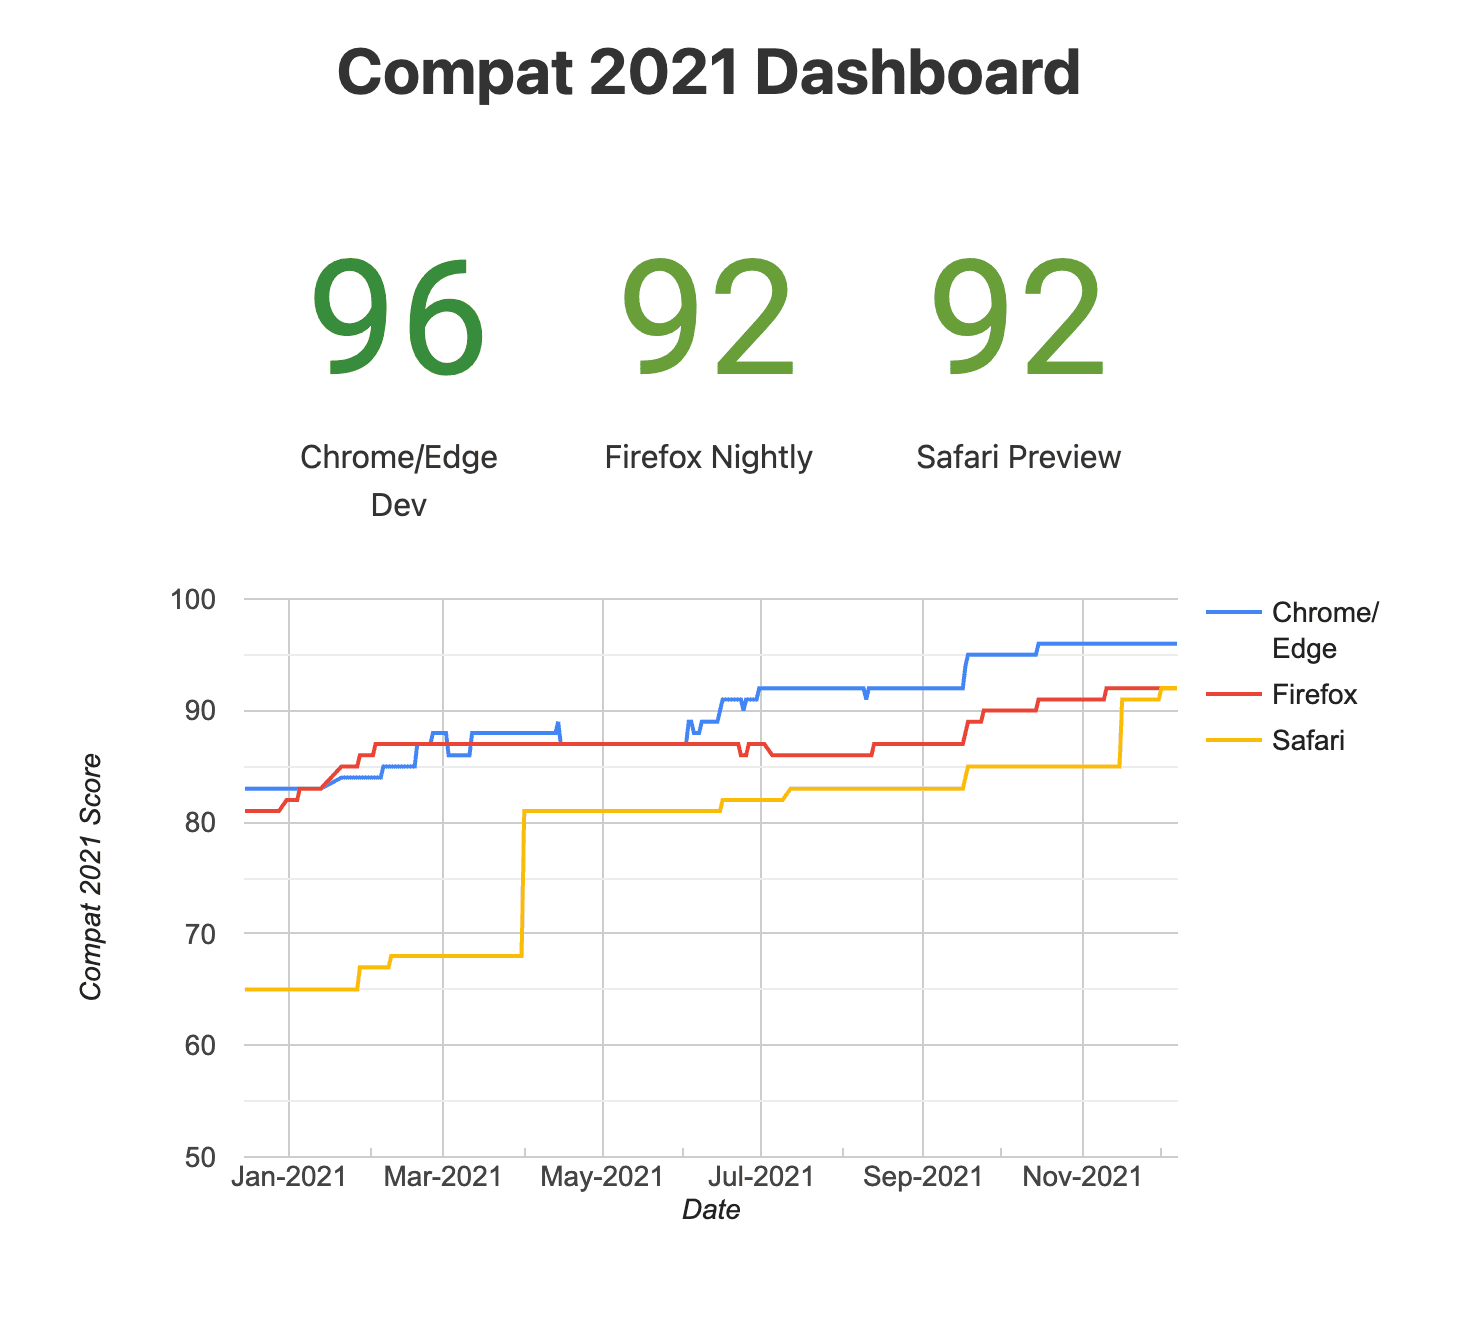 Ein Snapshot von Compat
Dashboard 2021 (experimentelle Browser)